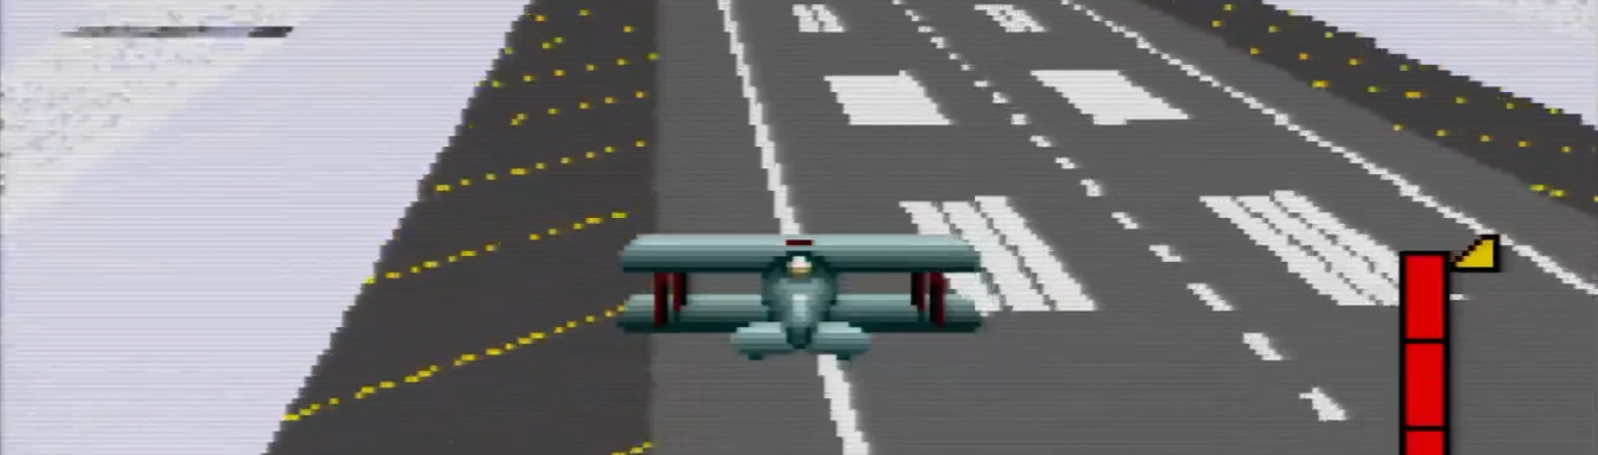 Pilotwings (Super Nintendo) Review 5